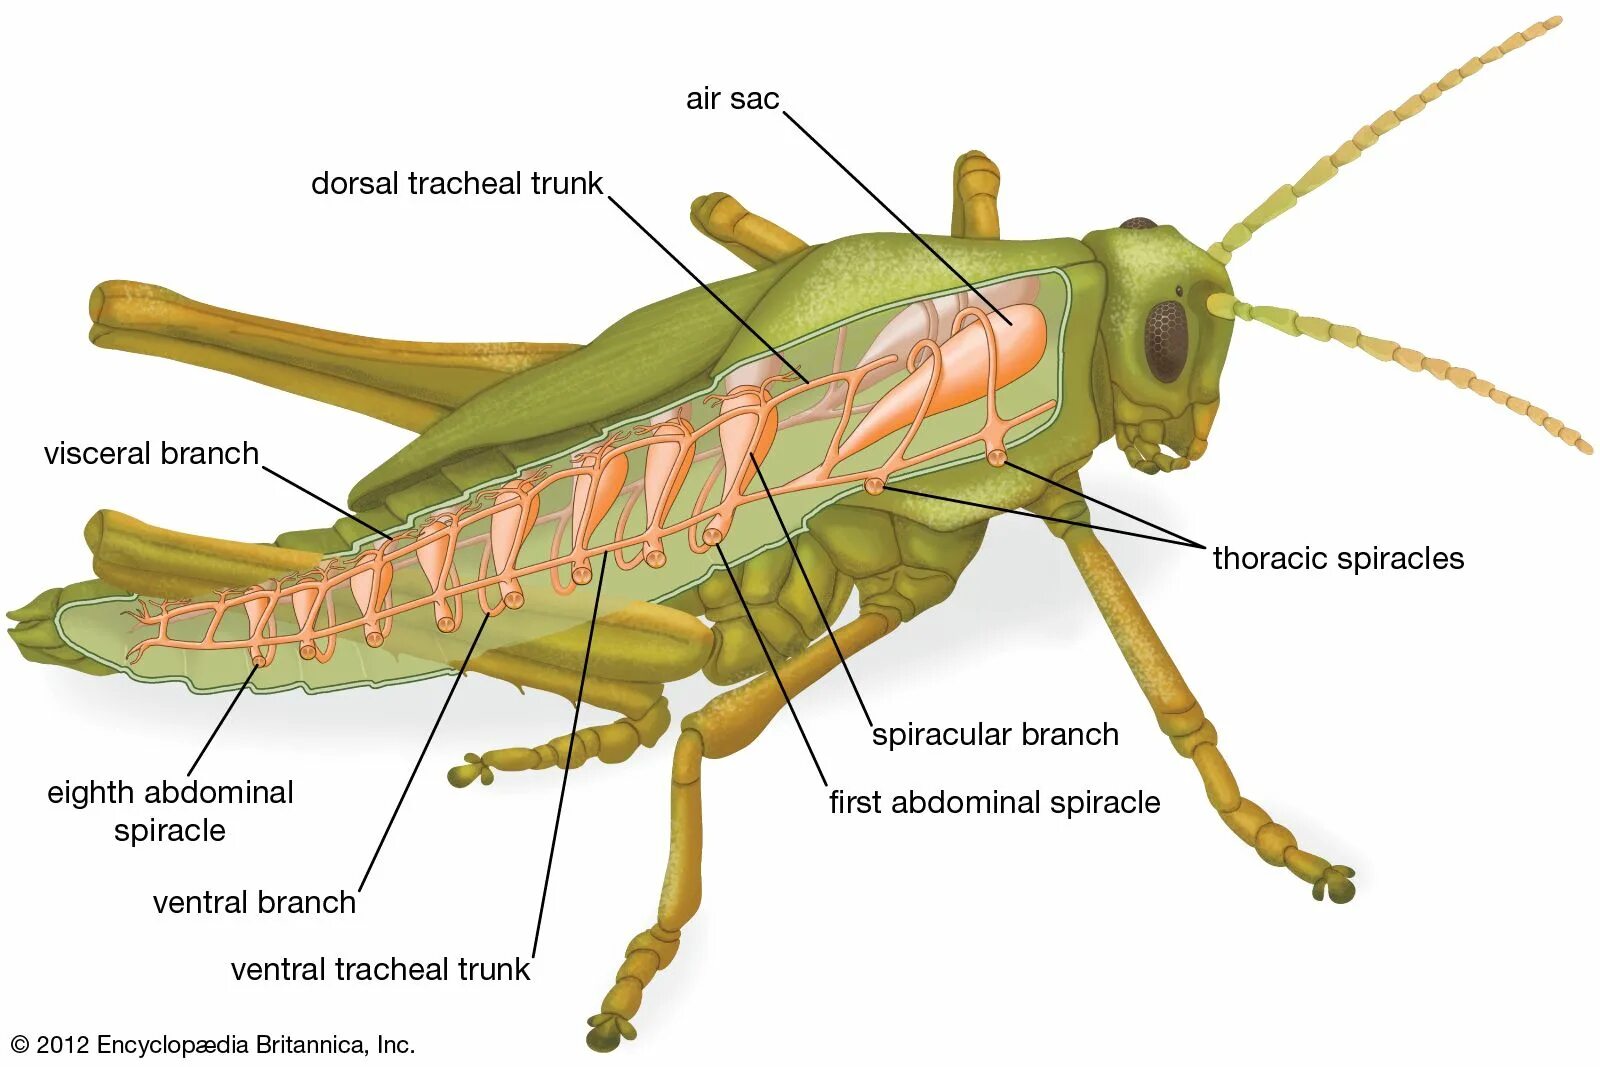 Дыхательная система кузнечика. Строение дыхательной системы насекомых. Дыхательная система насекомых кузнечик. Пищеварительная система кузнечика. Насекомое работающее на компетентные органы